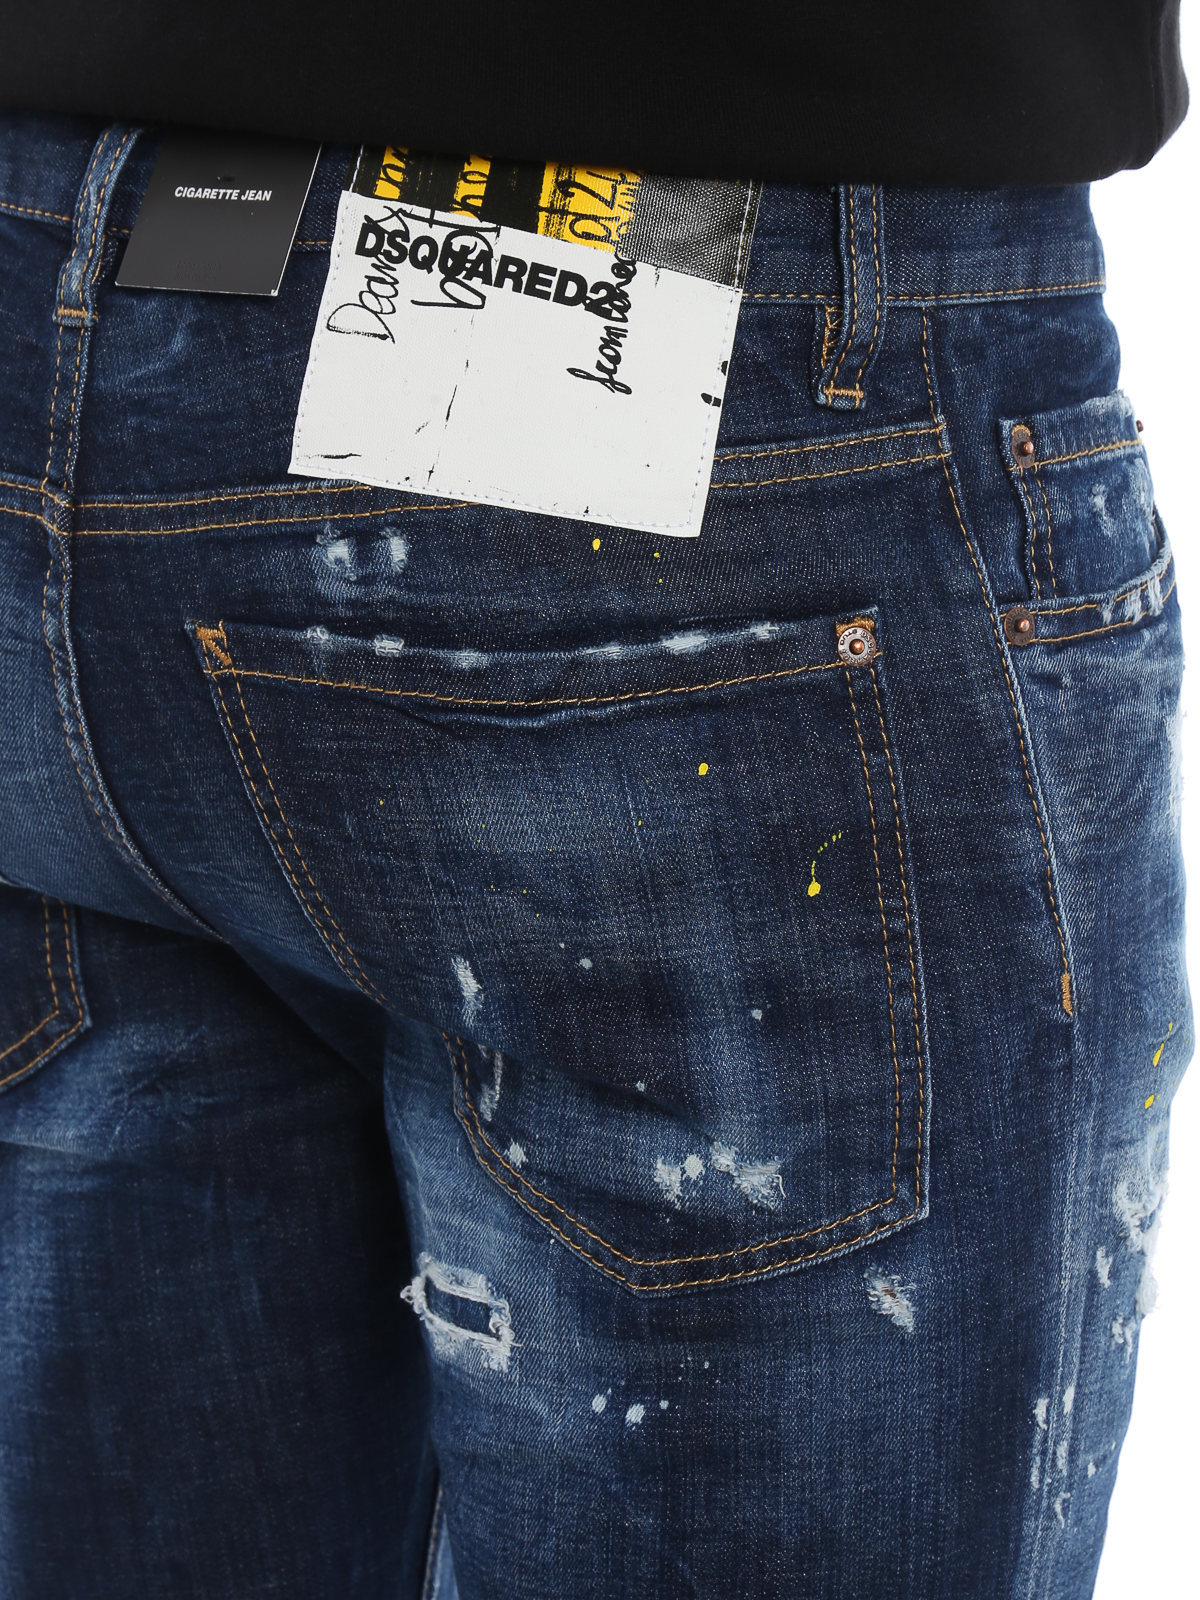 dsquared jeans online sale